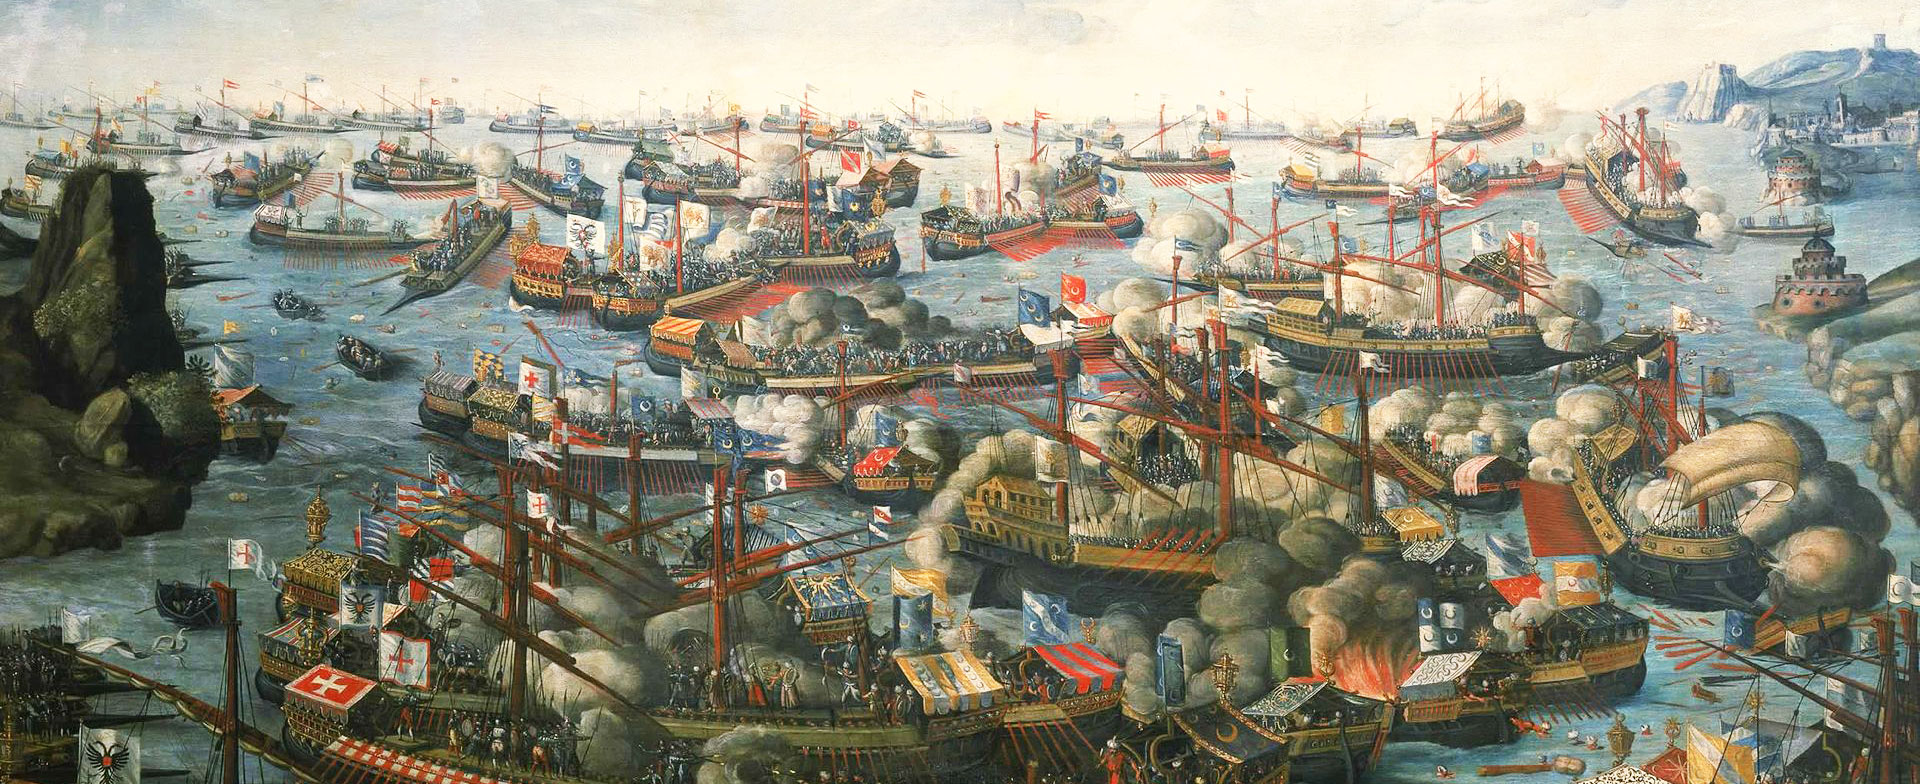 Dipinto della Battaglia di Lepanto 1571